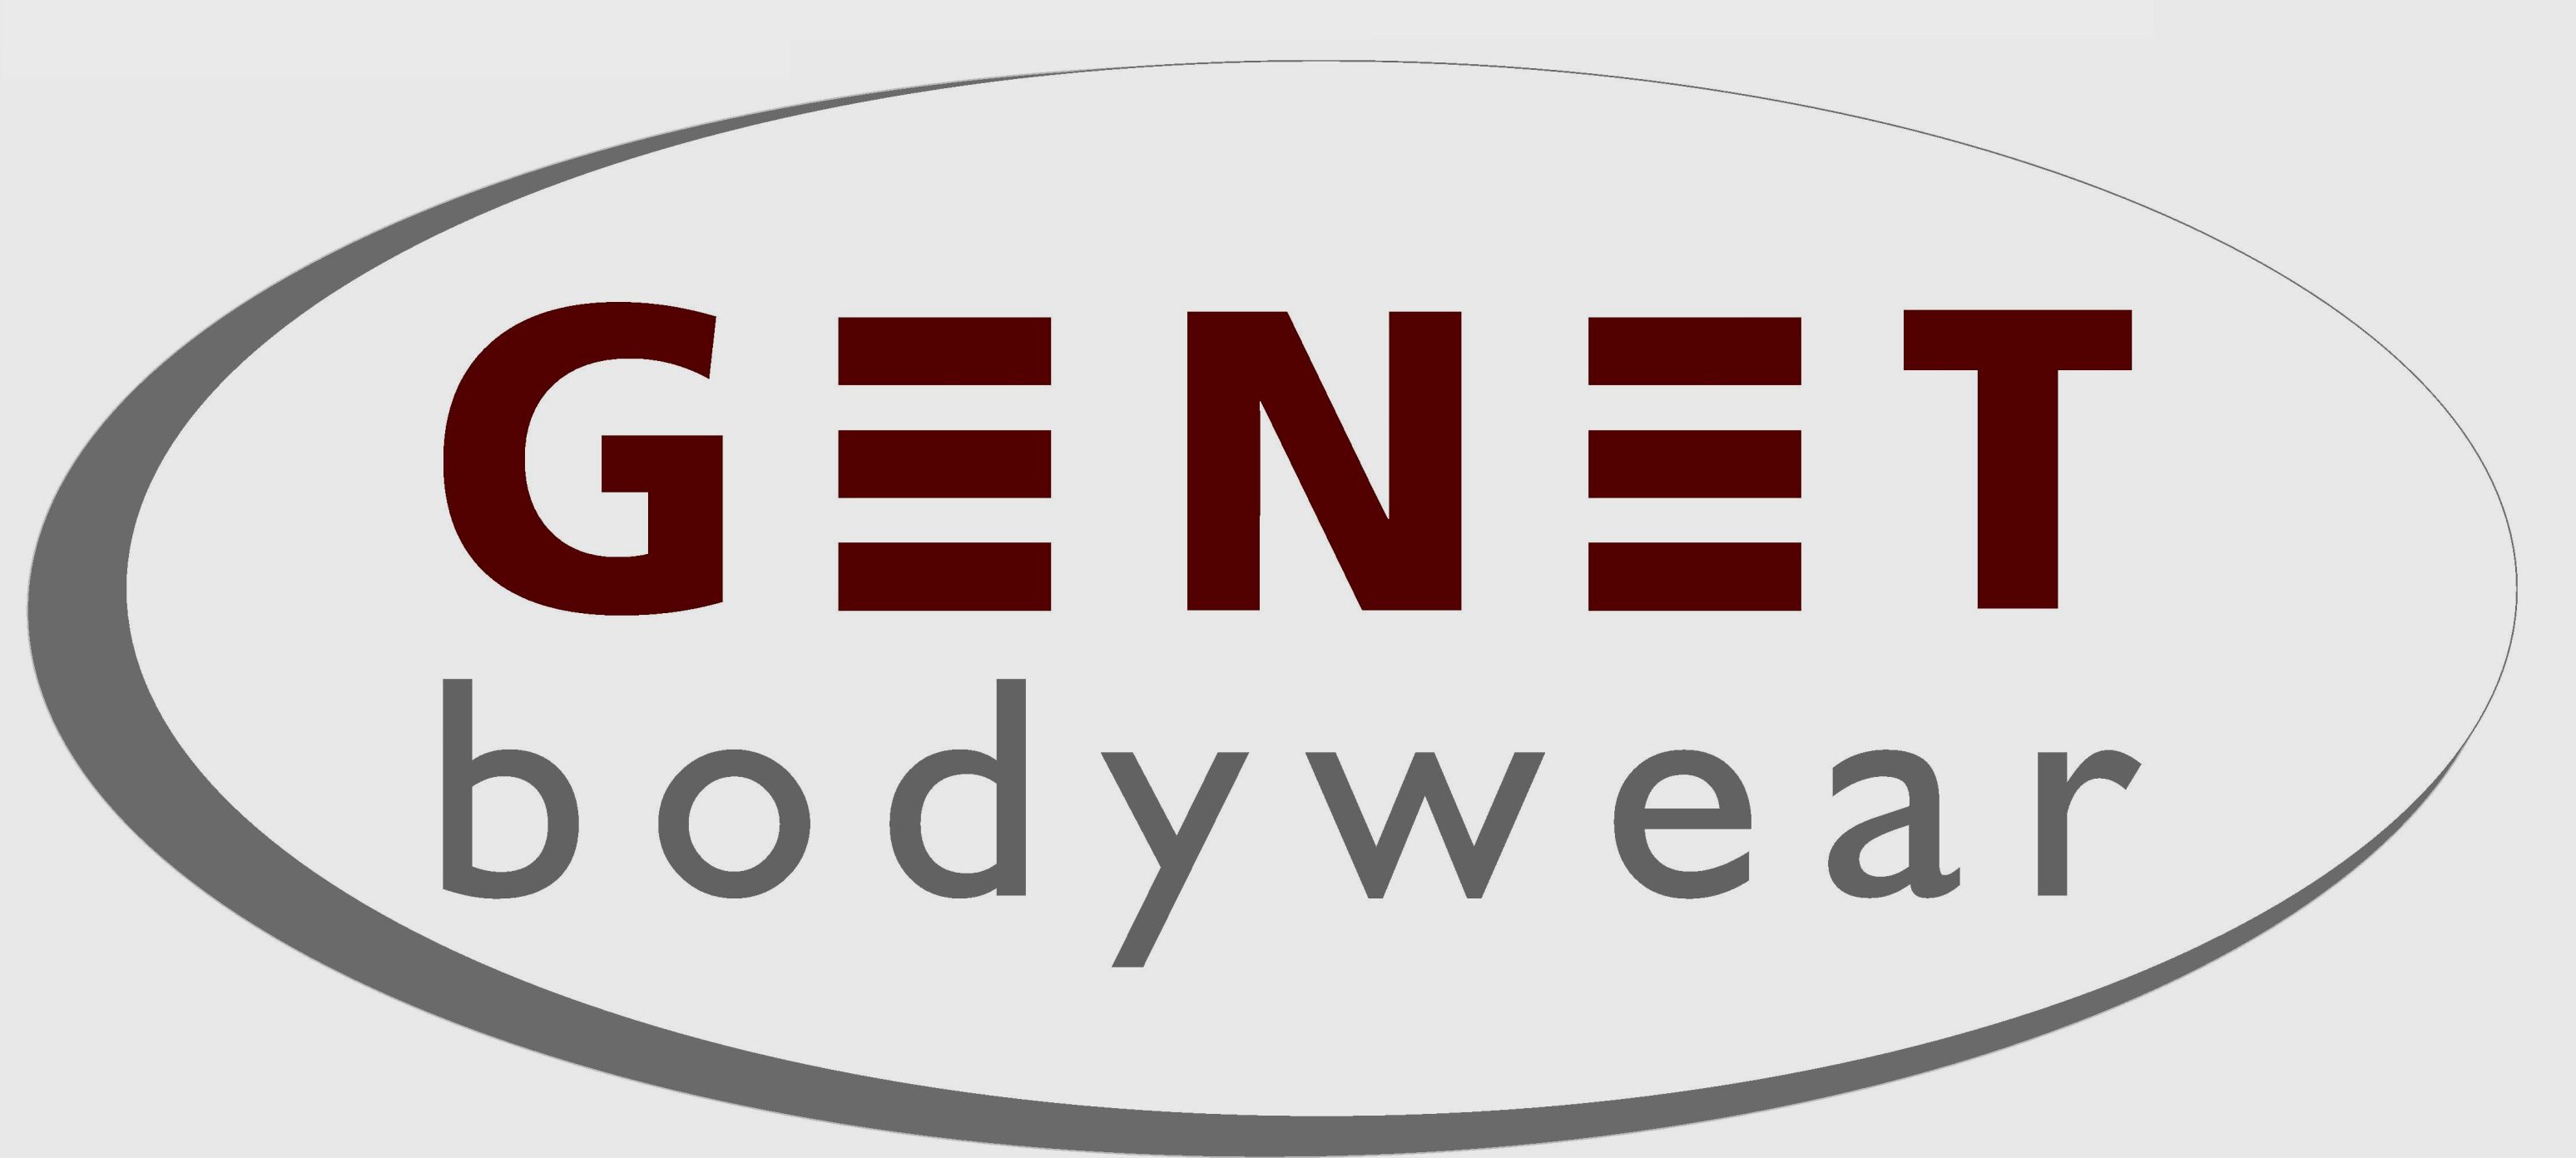 GENET bodywear